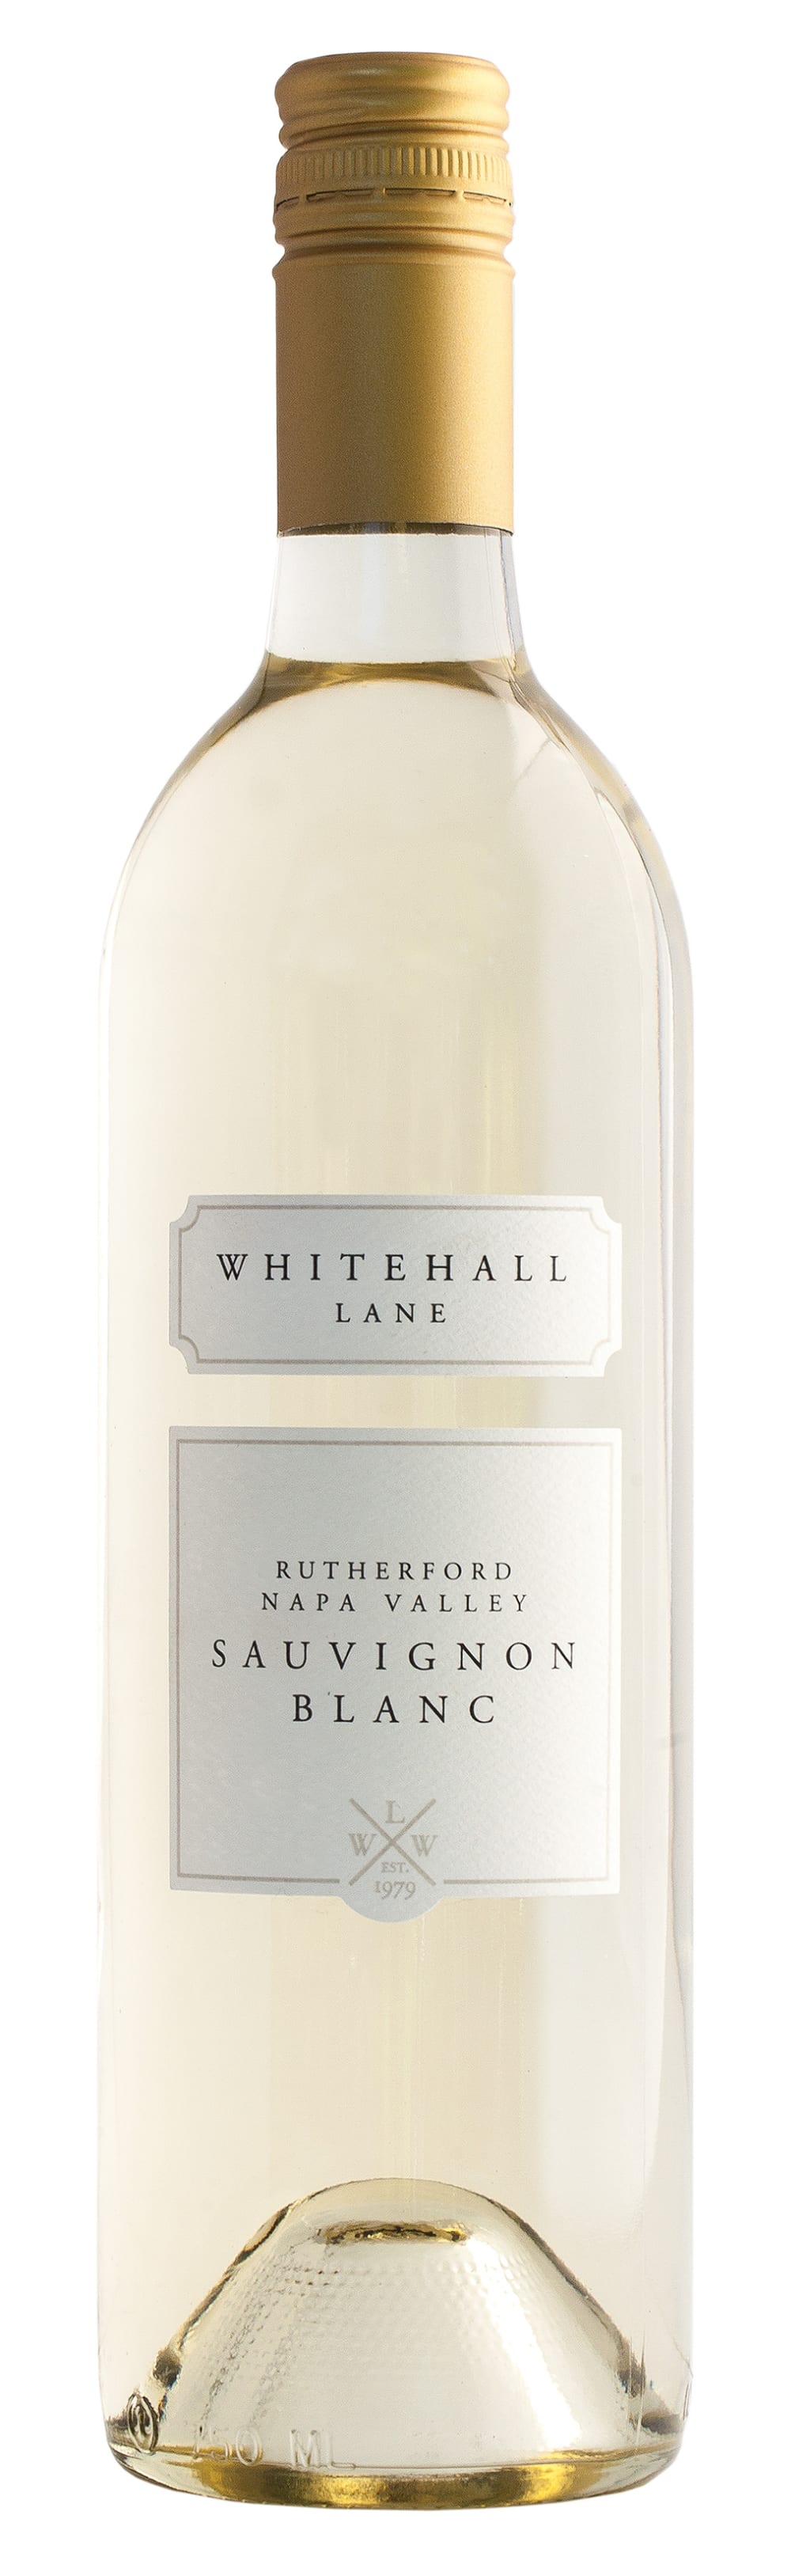 Whitehall Lane Sauvignon Blanc 2018